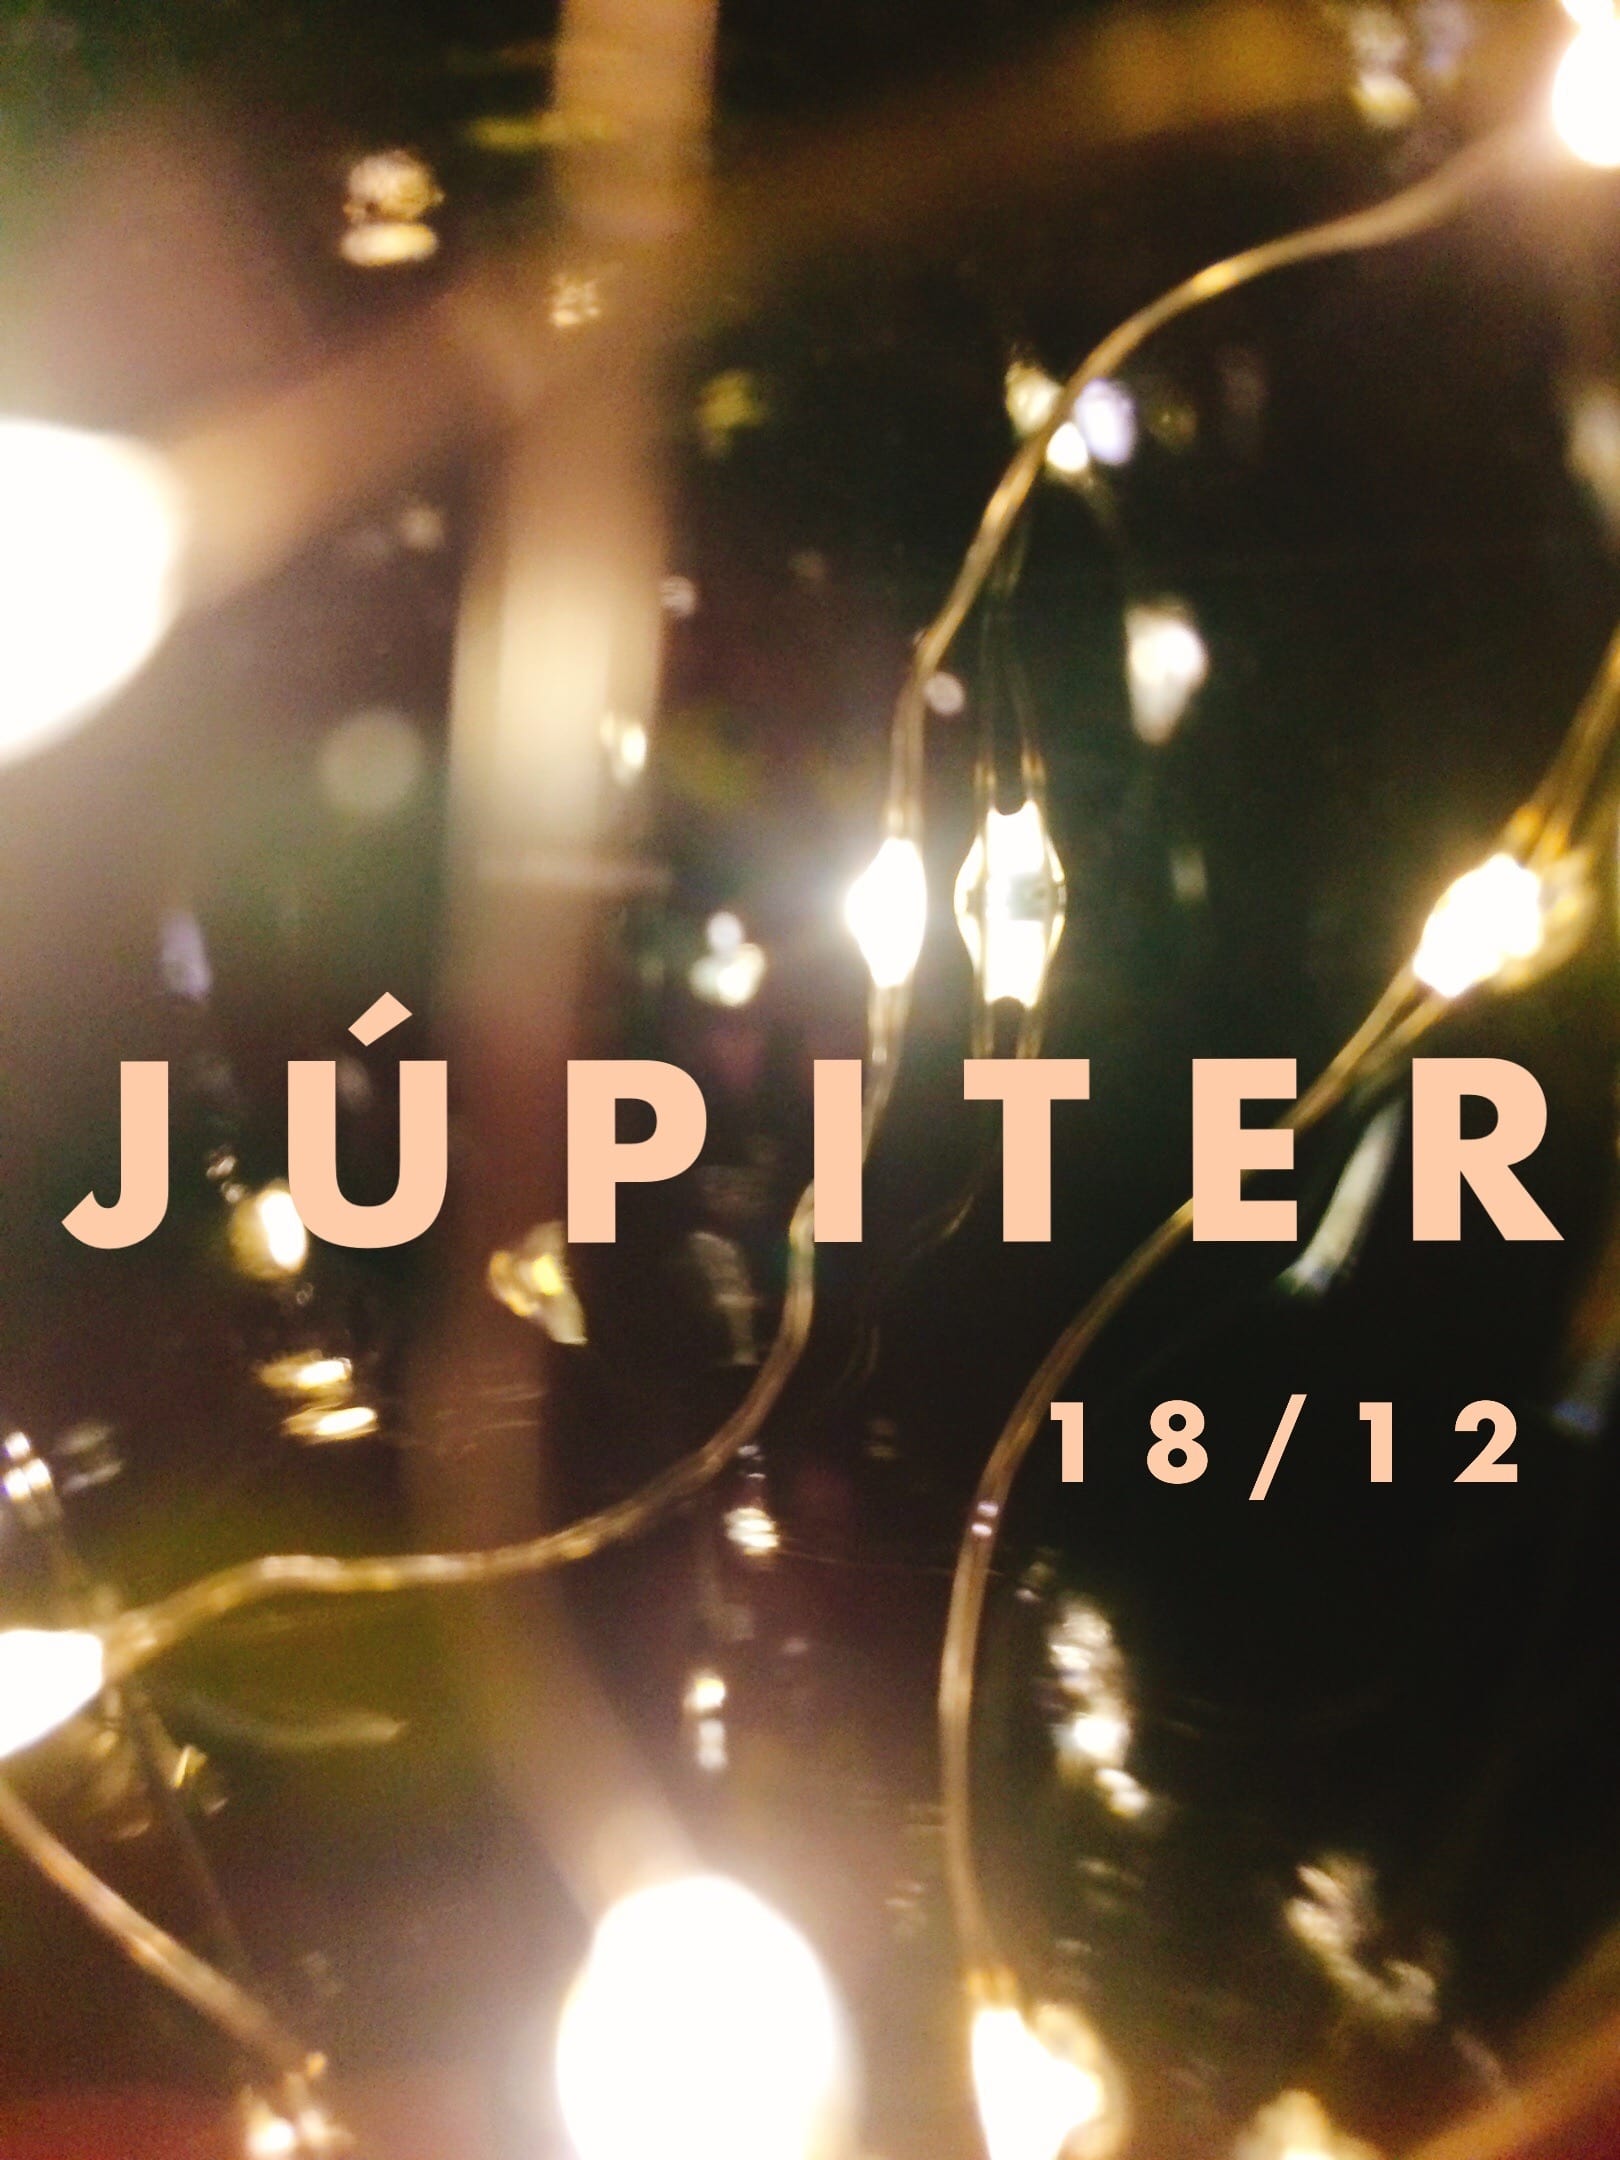 Júpiter: Um curta singelo e sincero